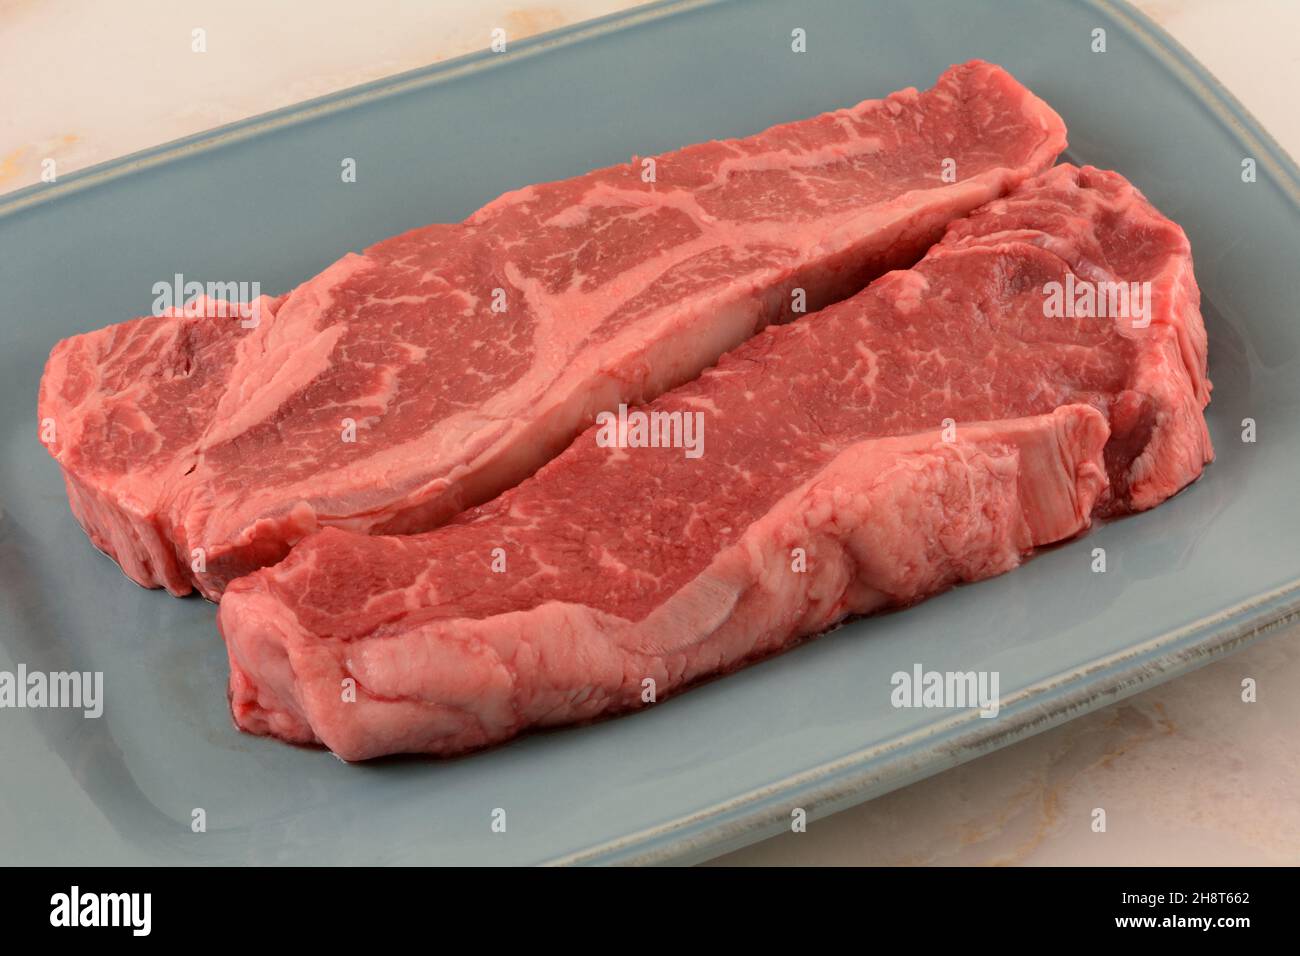 Zwei rohe New Yorker Steaks, die auf einem blauen Servierteller gegrillt werden können Stockfoto